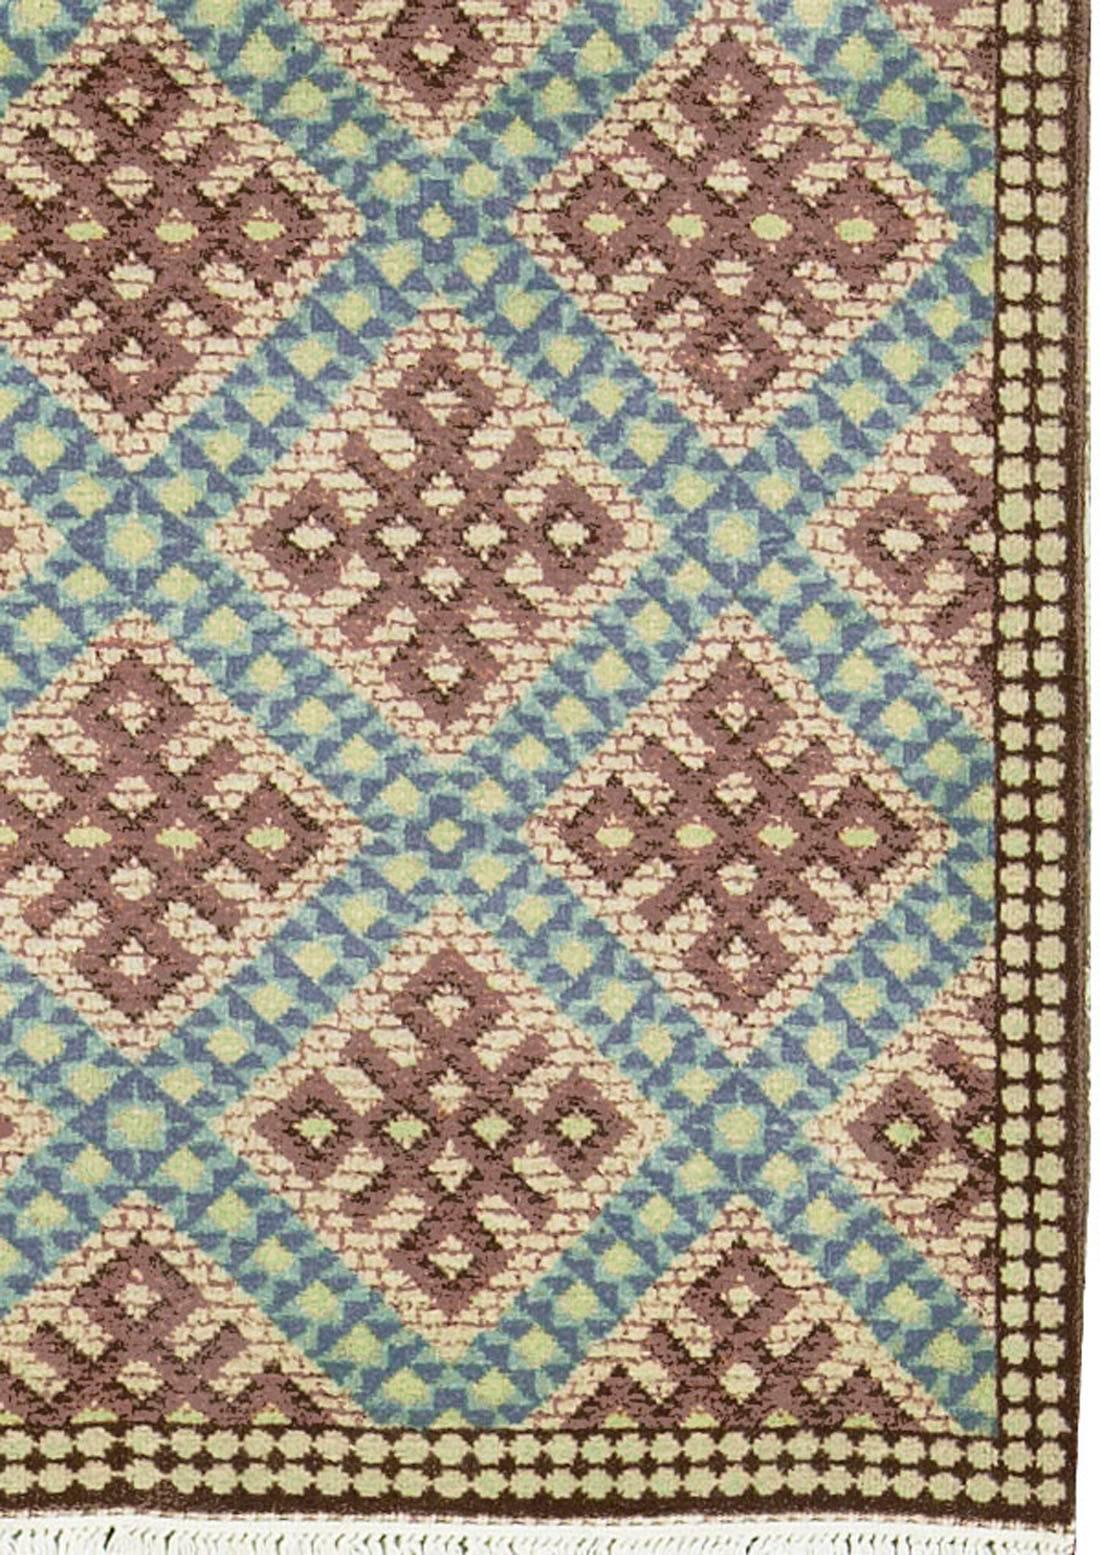 Tapis européen vintage. Ils tissent des tapis en Roumanie depuis l'Empire ottoman, mais ce n'est que depuis le milieu du XXe siècle qu'ils exportent leur production. Les motifs sont généralement basés sur d'anciens modèles persans, mais depuis peu,